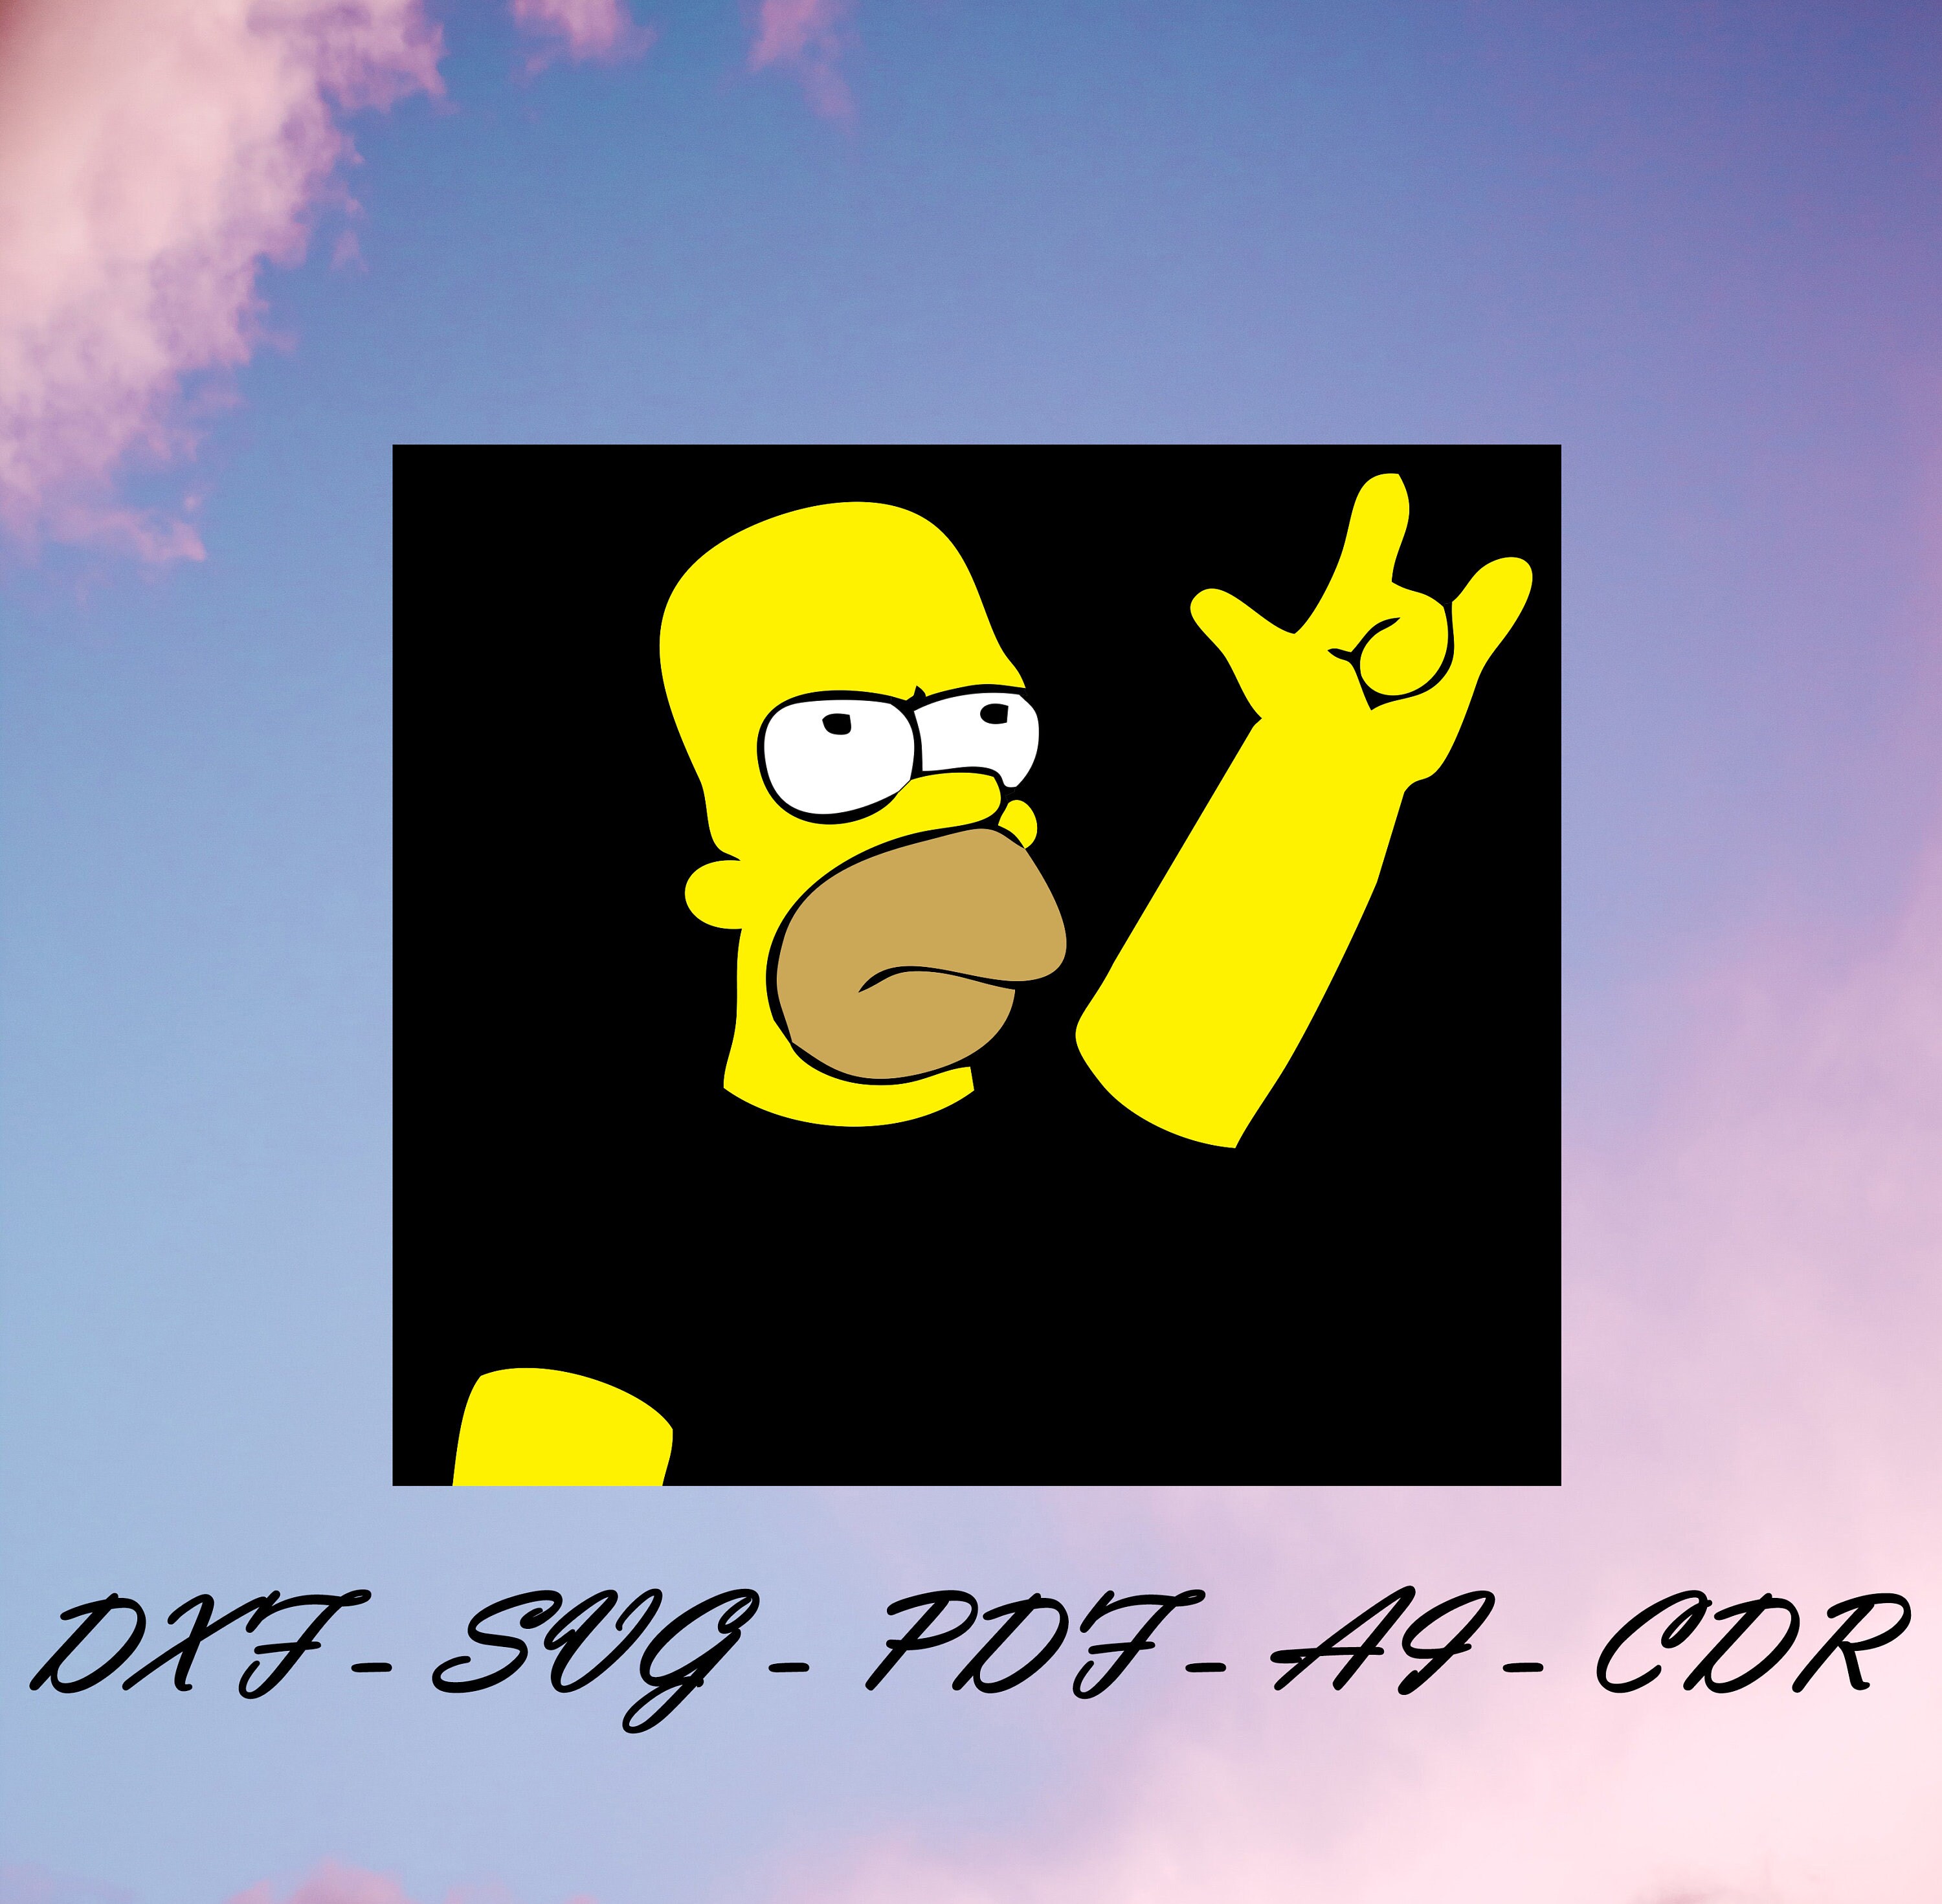 Sticker Rock & Roll Homer Custom